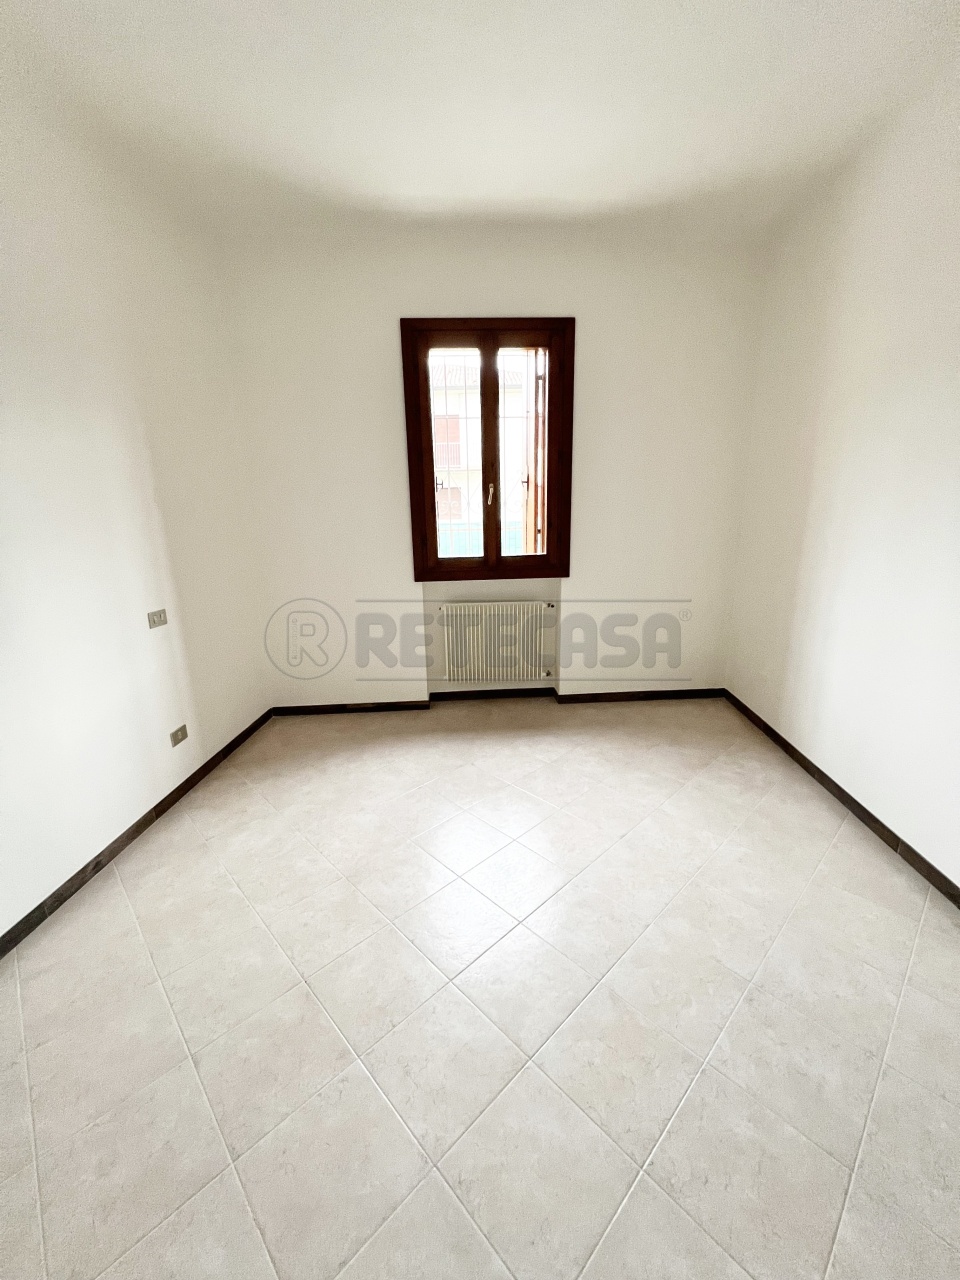 Appartamento in vendita a Caldogno, 5 locali, prezzo € 83.000 | PortaleAgenzieImmobiliari.it